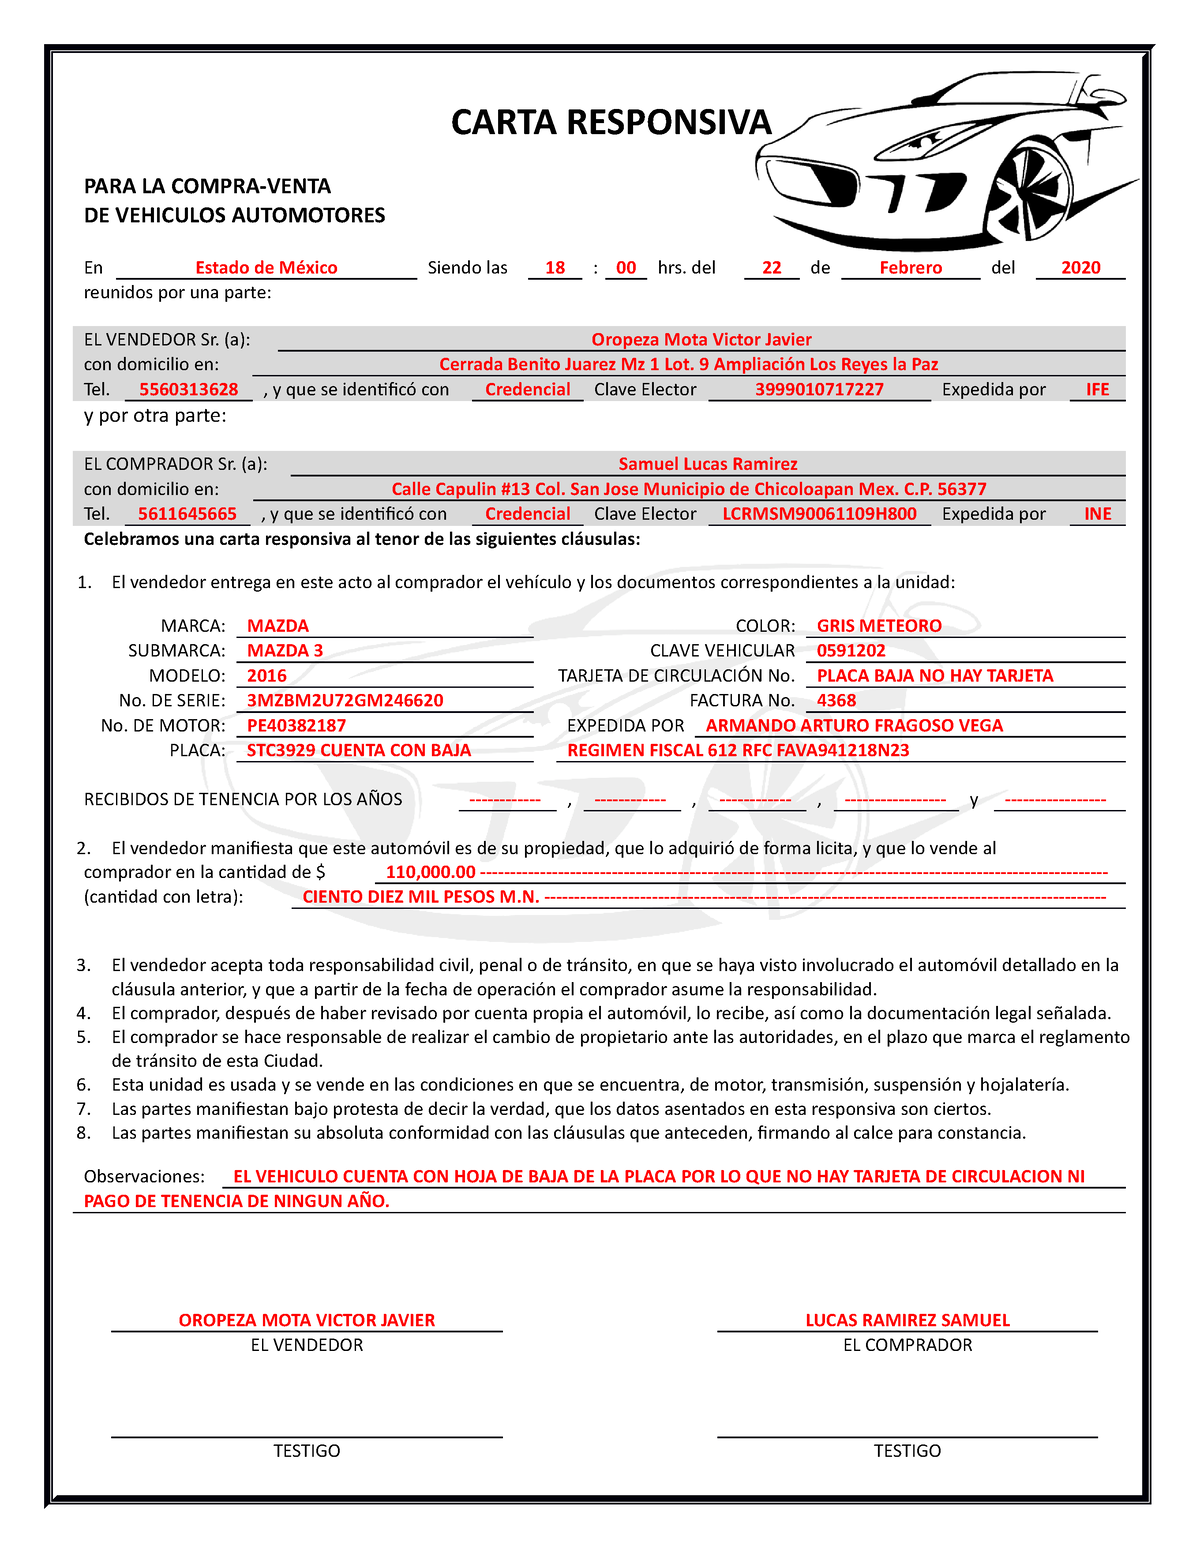 Carta Responsiva - documento 1 - CARTA RESPONSIVA PARA LA COMPRA-VENTA DE  VEHICULOS AUTOMOTORES En - Studocu